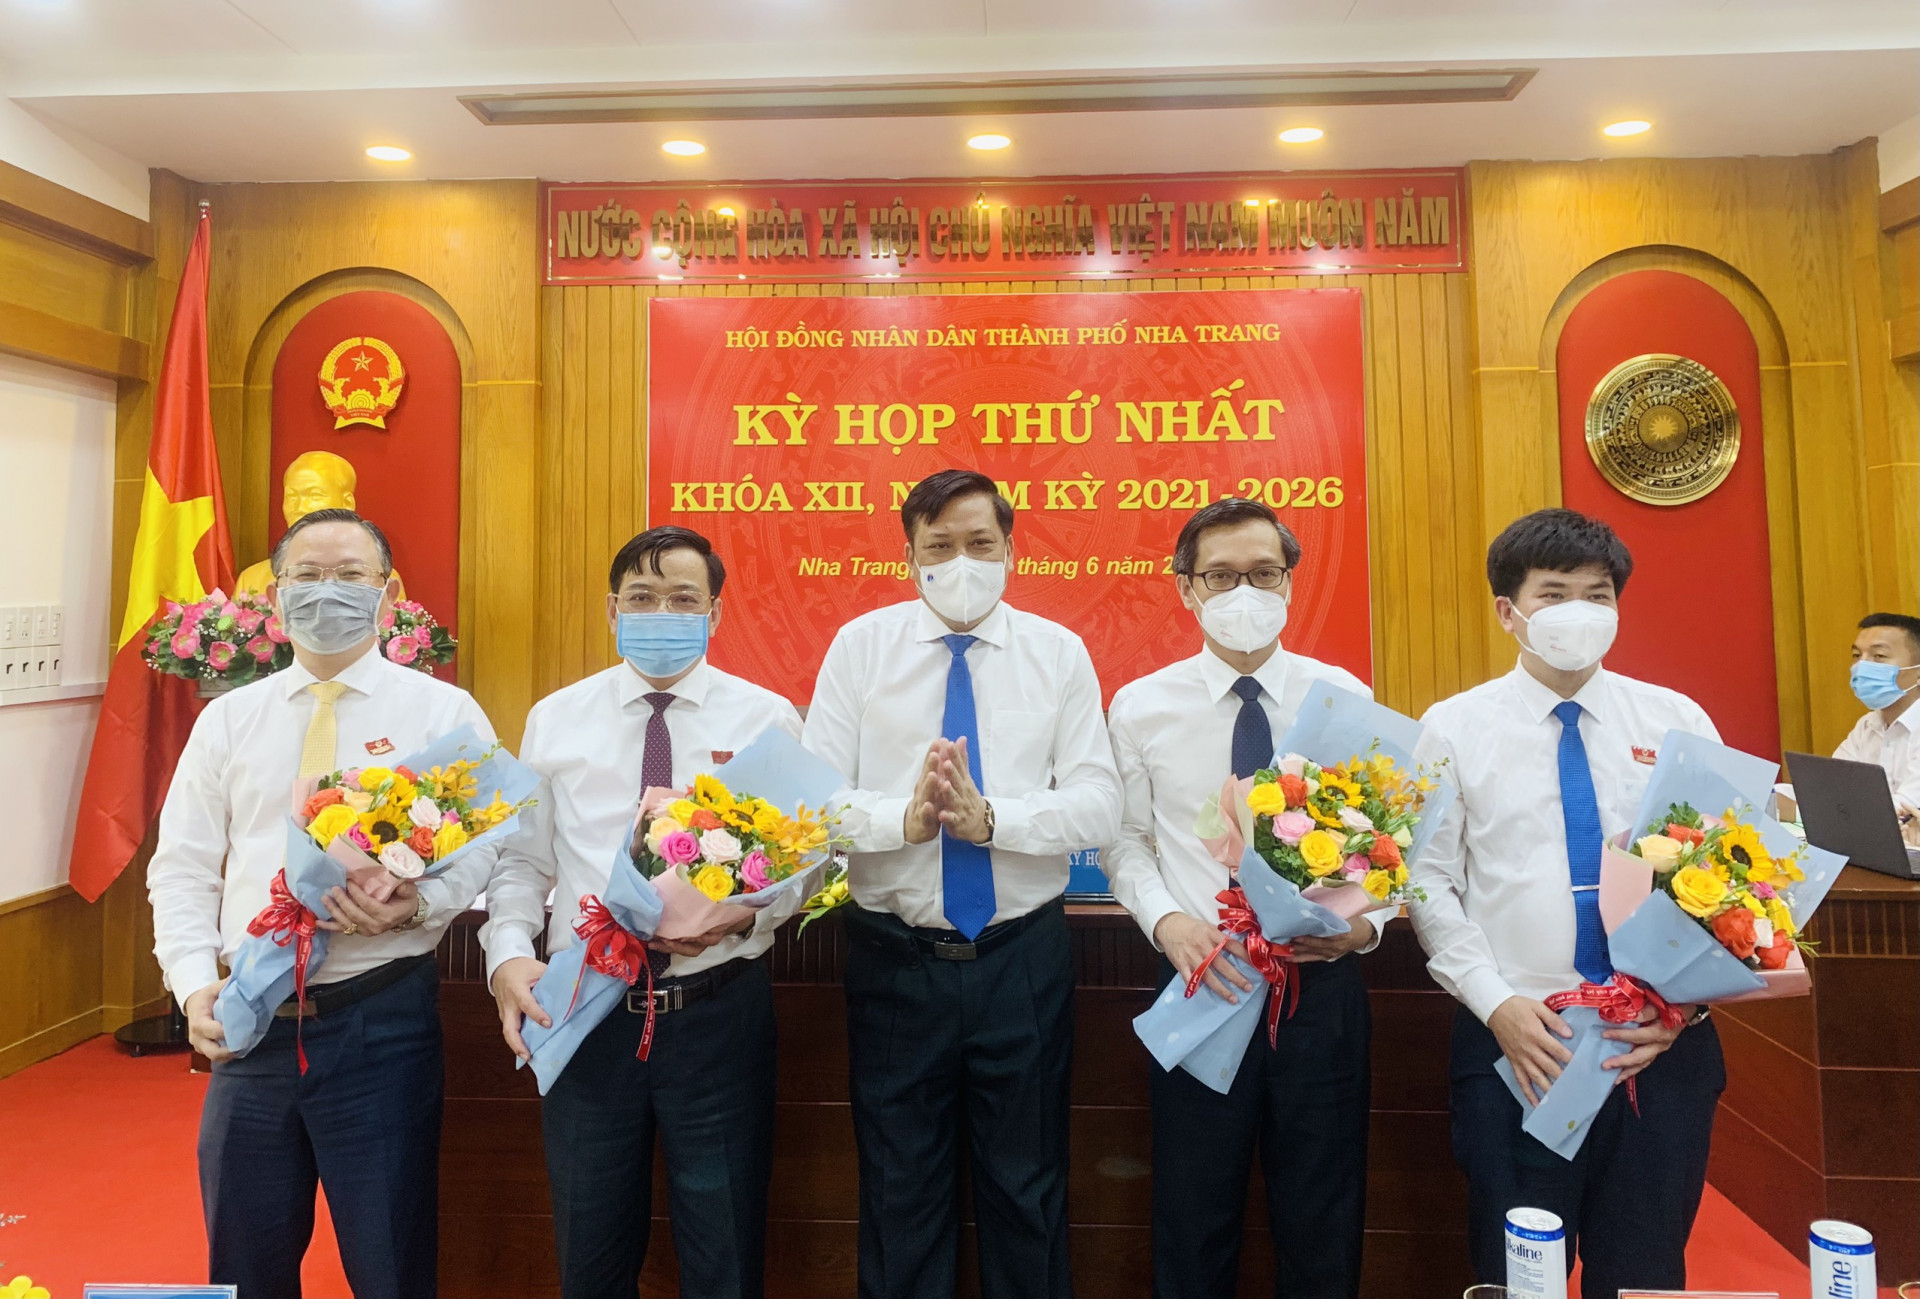 Chủ tịch và các Phó Chủ tịch UBND TP. Nha Trang nhận hoa chúc mừng của Bí thư Thành ủy Nha Trang Lê Hữu Thọ